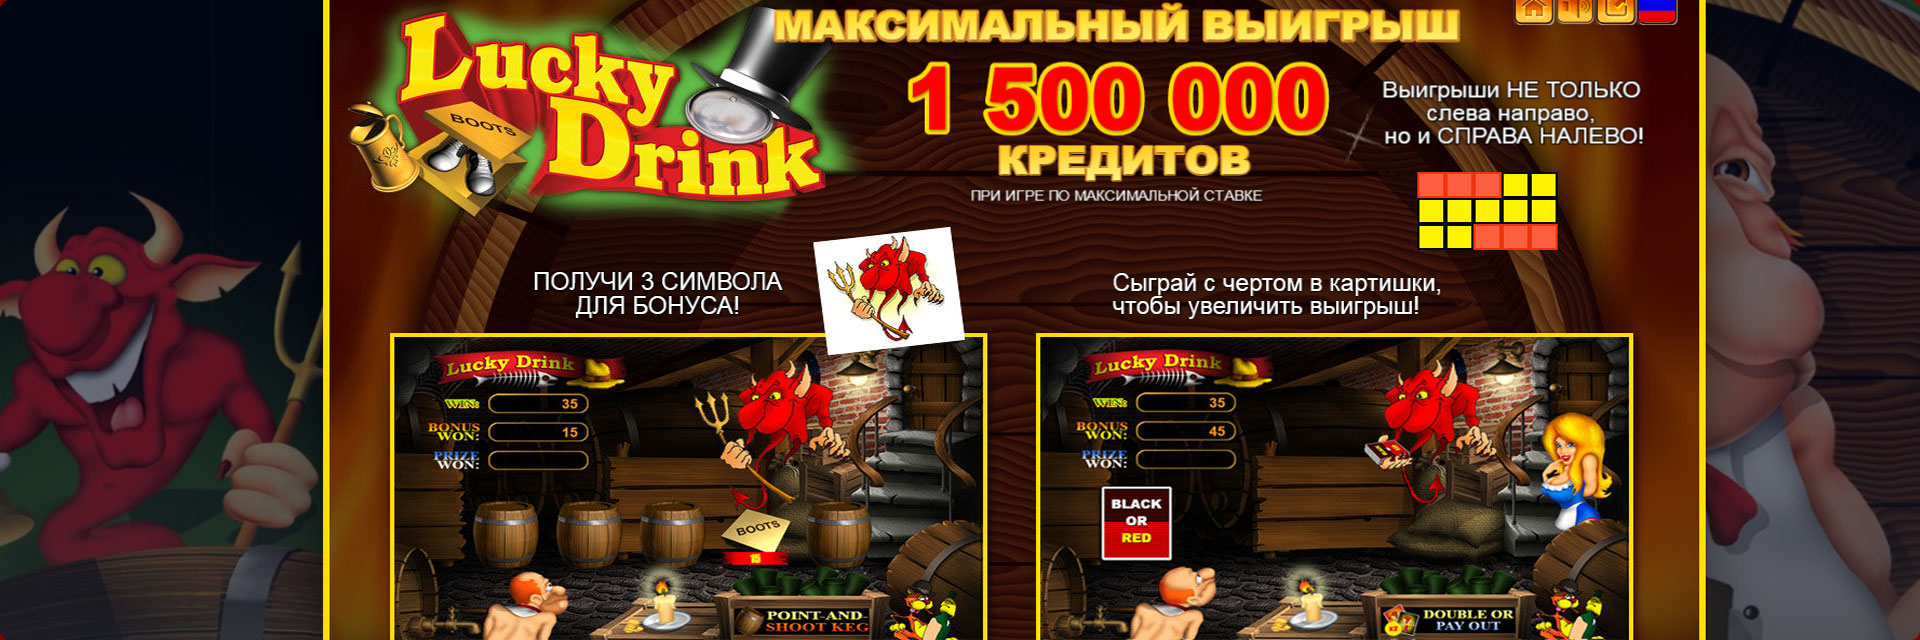 Игровой автомат Пьяница онлайн.